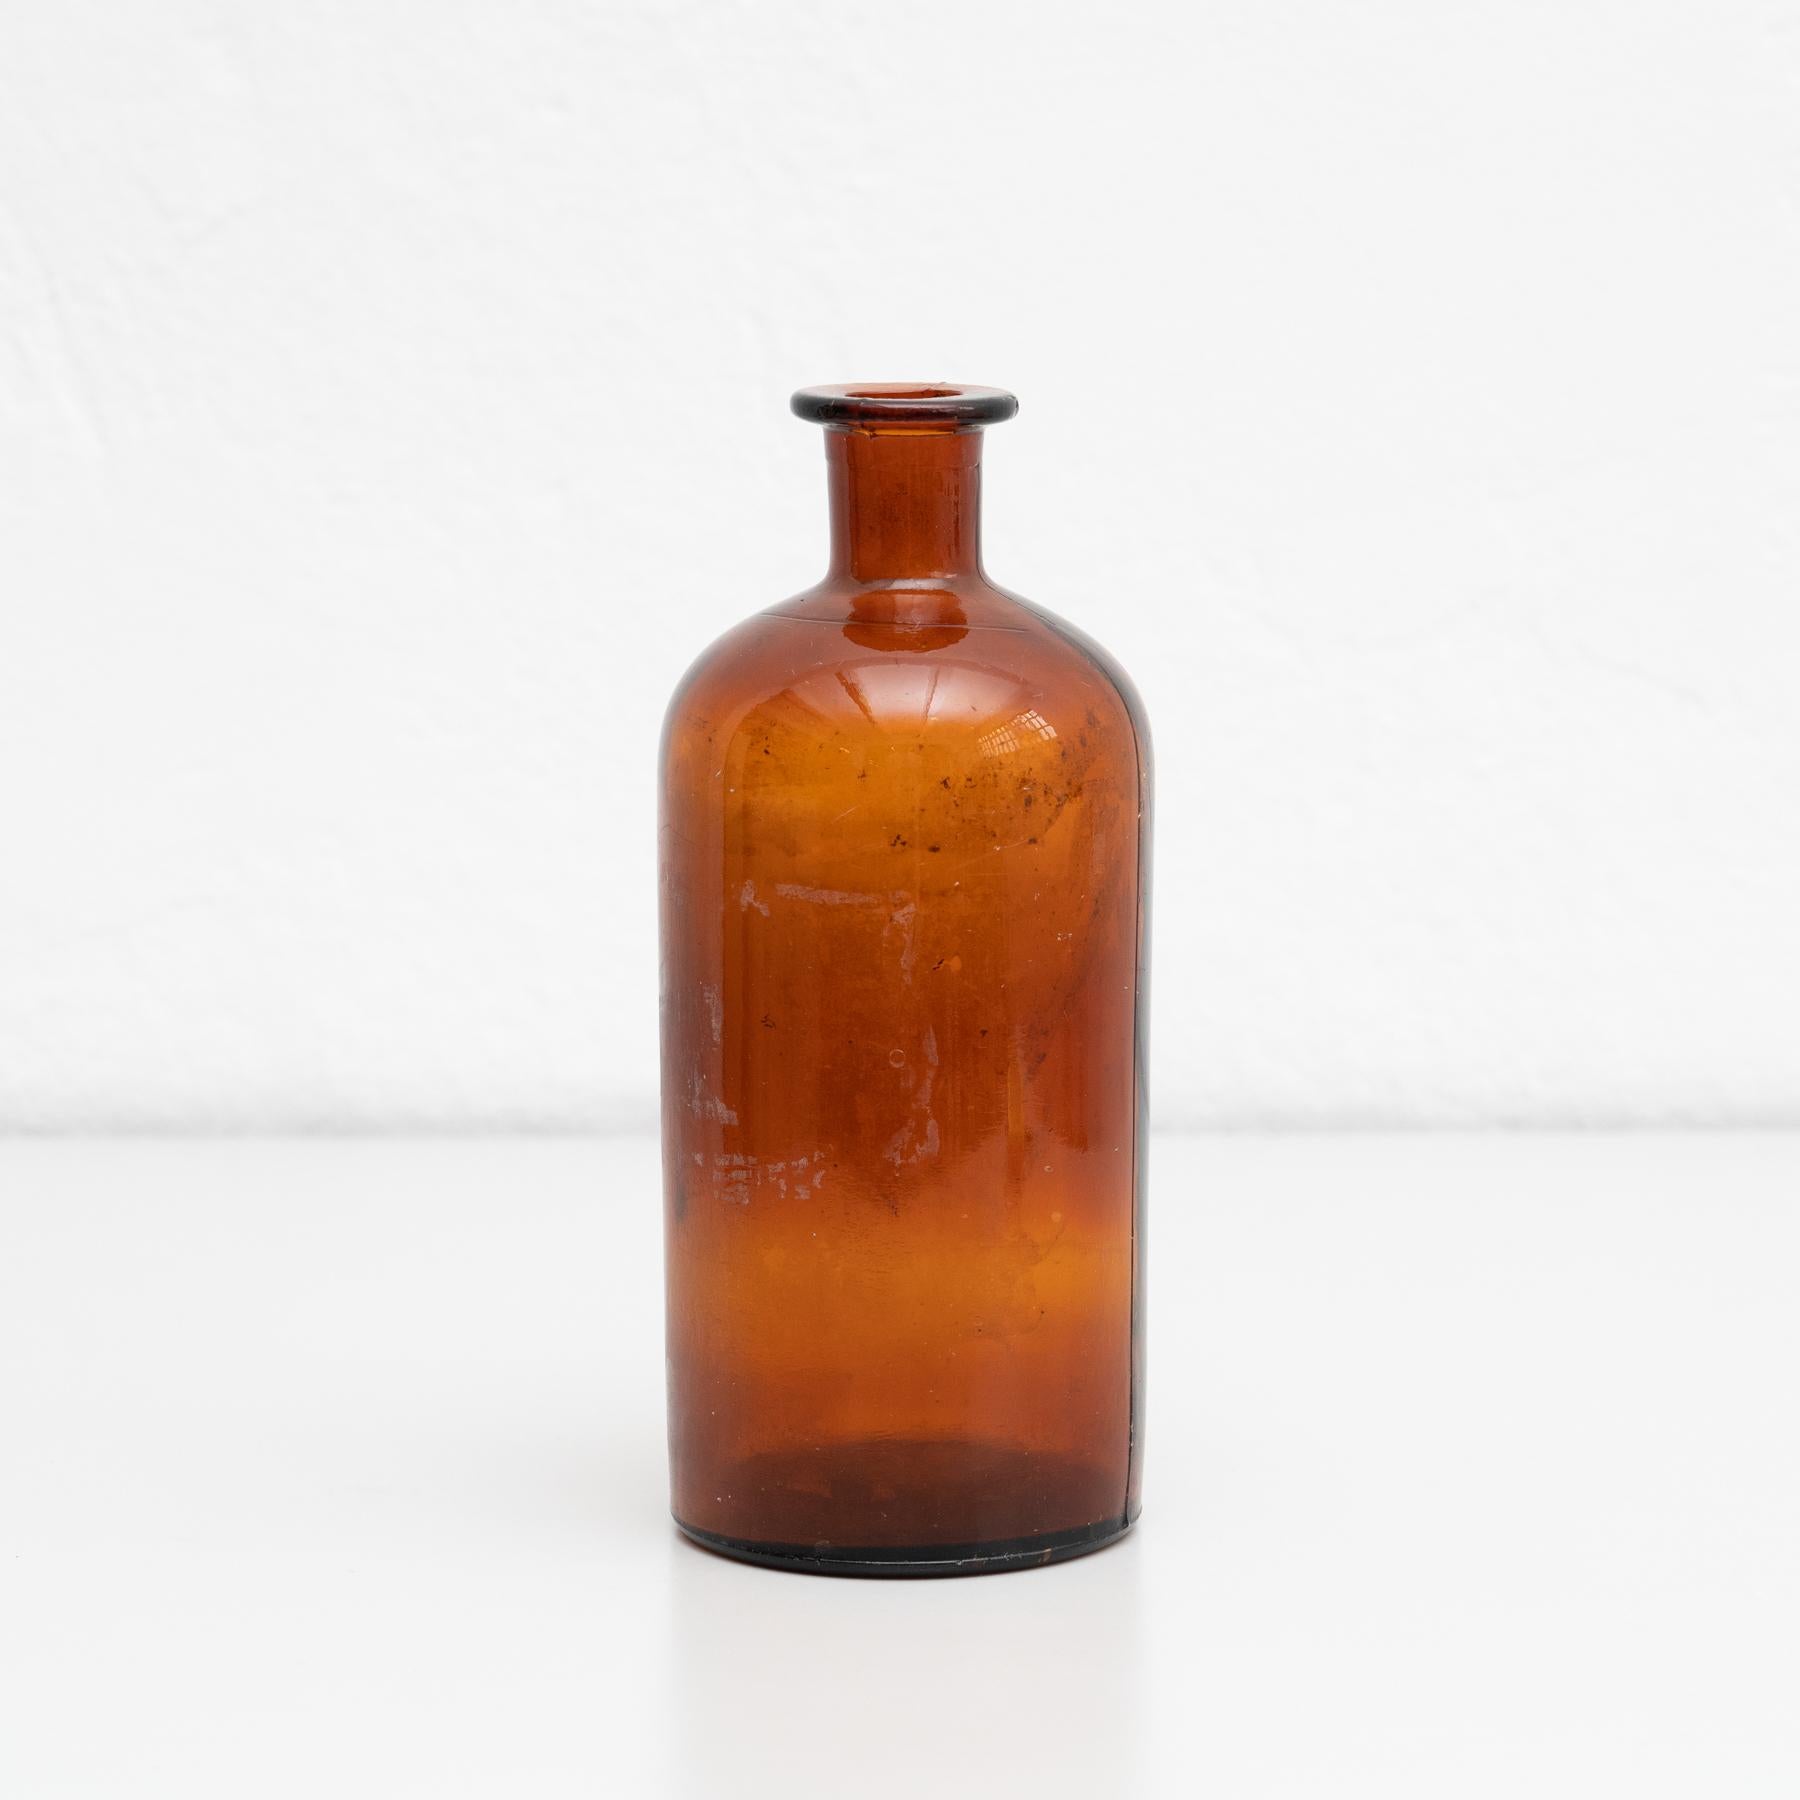 Bernsteinfarbene Apothekerflasche aus der Mitte des 20.

Von einem unbekannten Hersteller aus Frankreich.

Originaler Zustand mit geringen alters- und gebrauchsbedingten Abnutzungserscheinungen, der eine schöne Patina